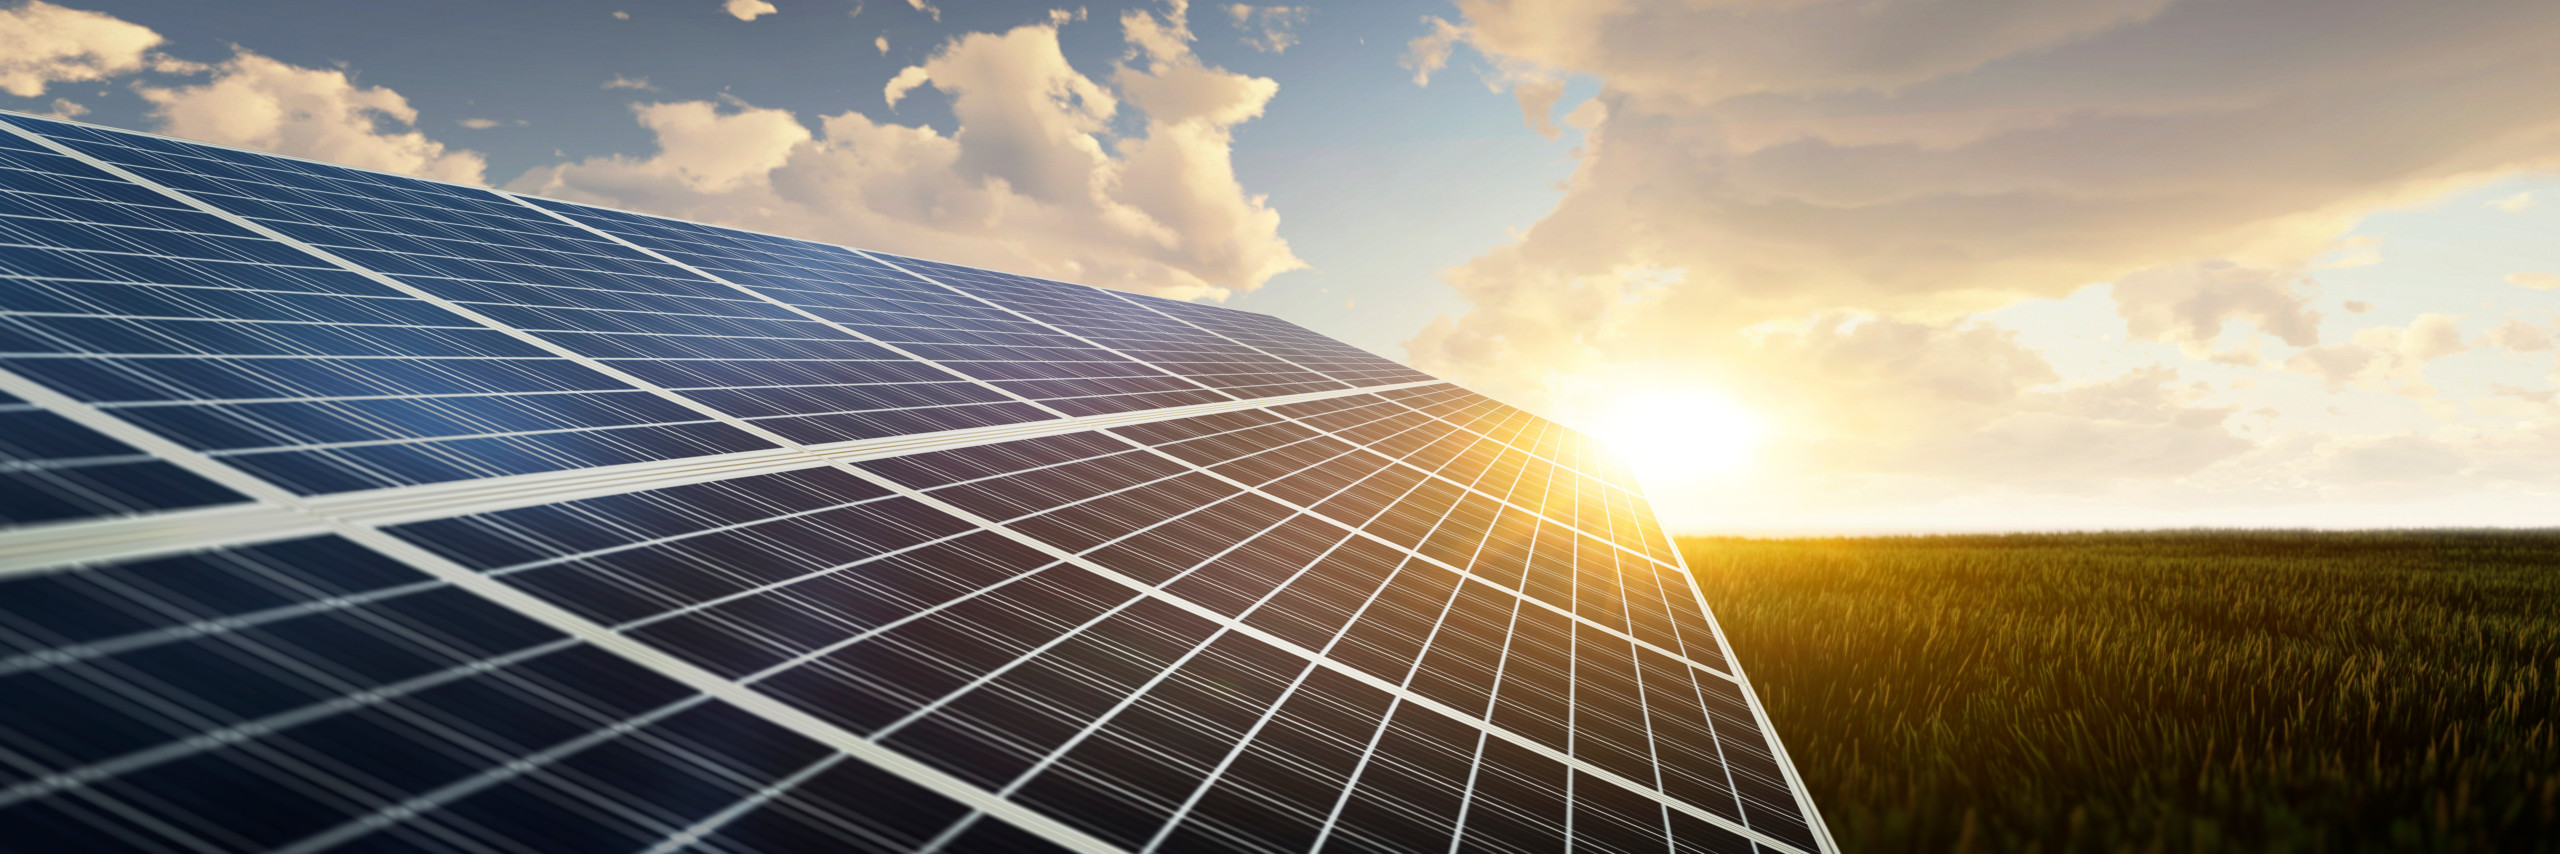 Chartanalyse First Solar: Neues Klimaschutzpaket sorgte für starken Impuls